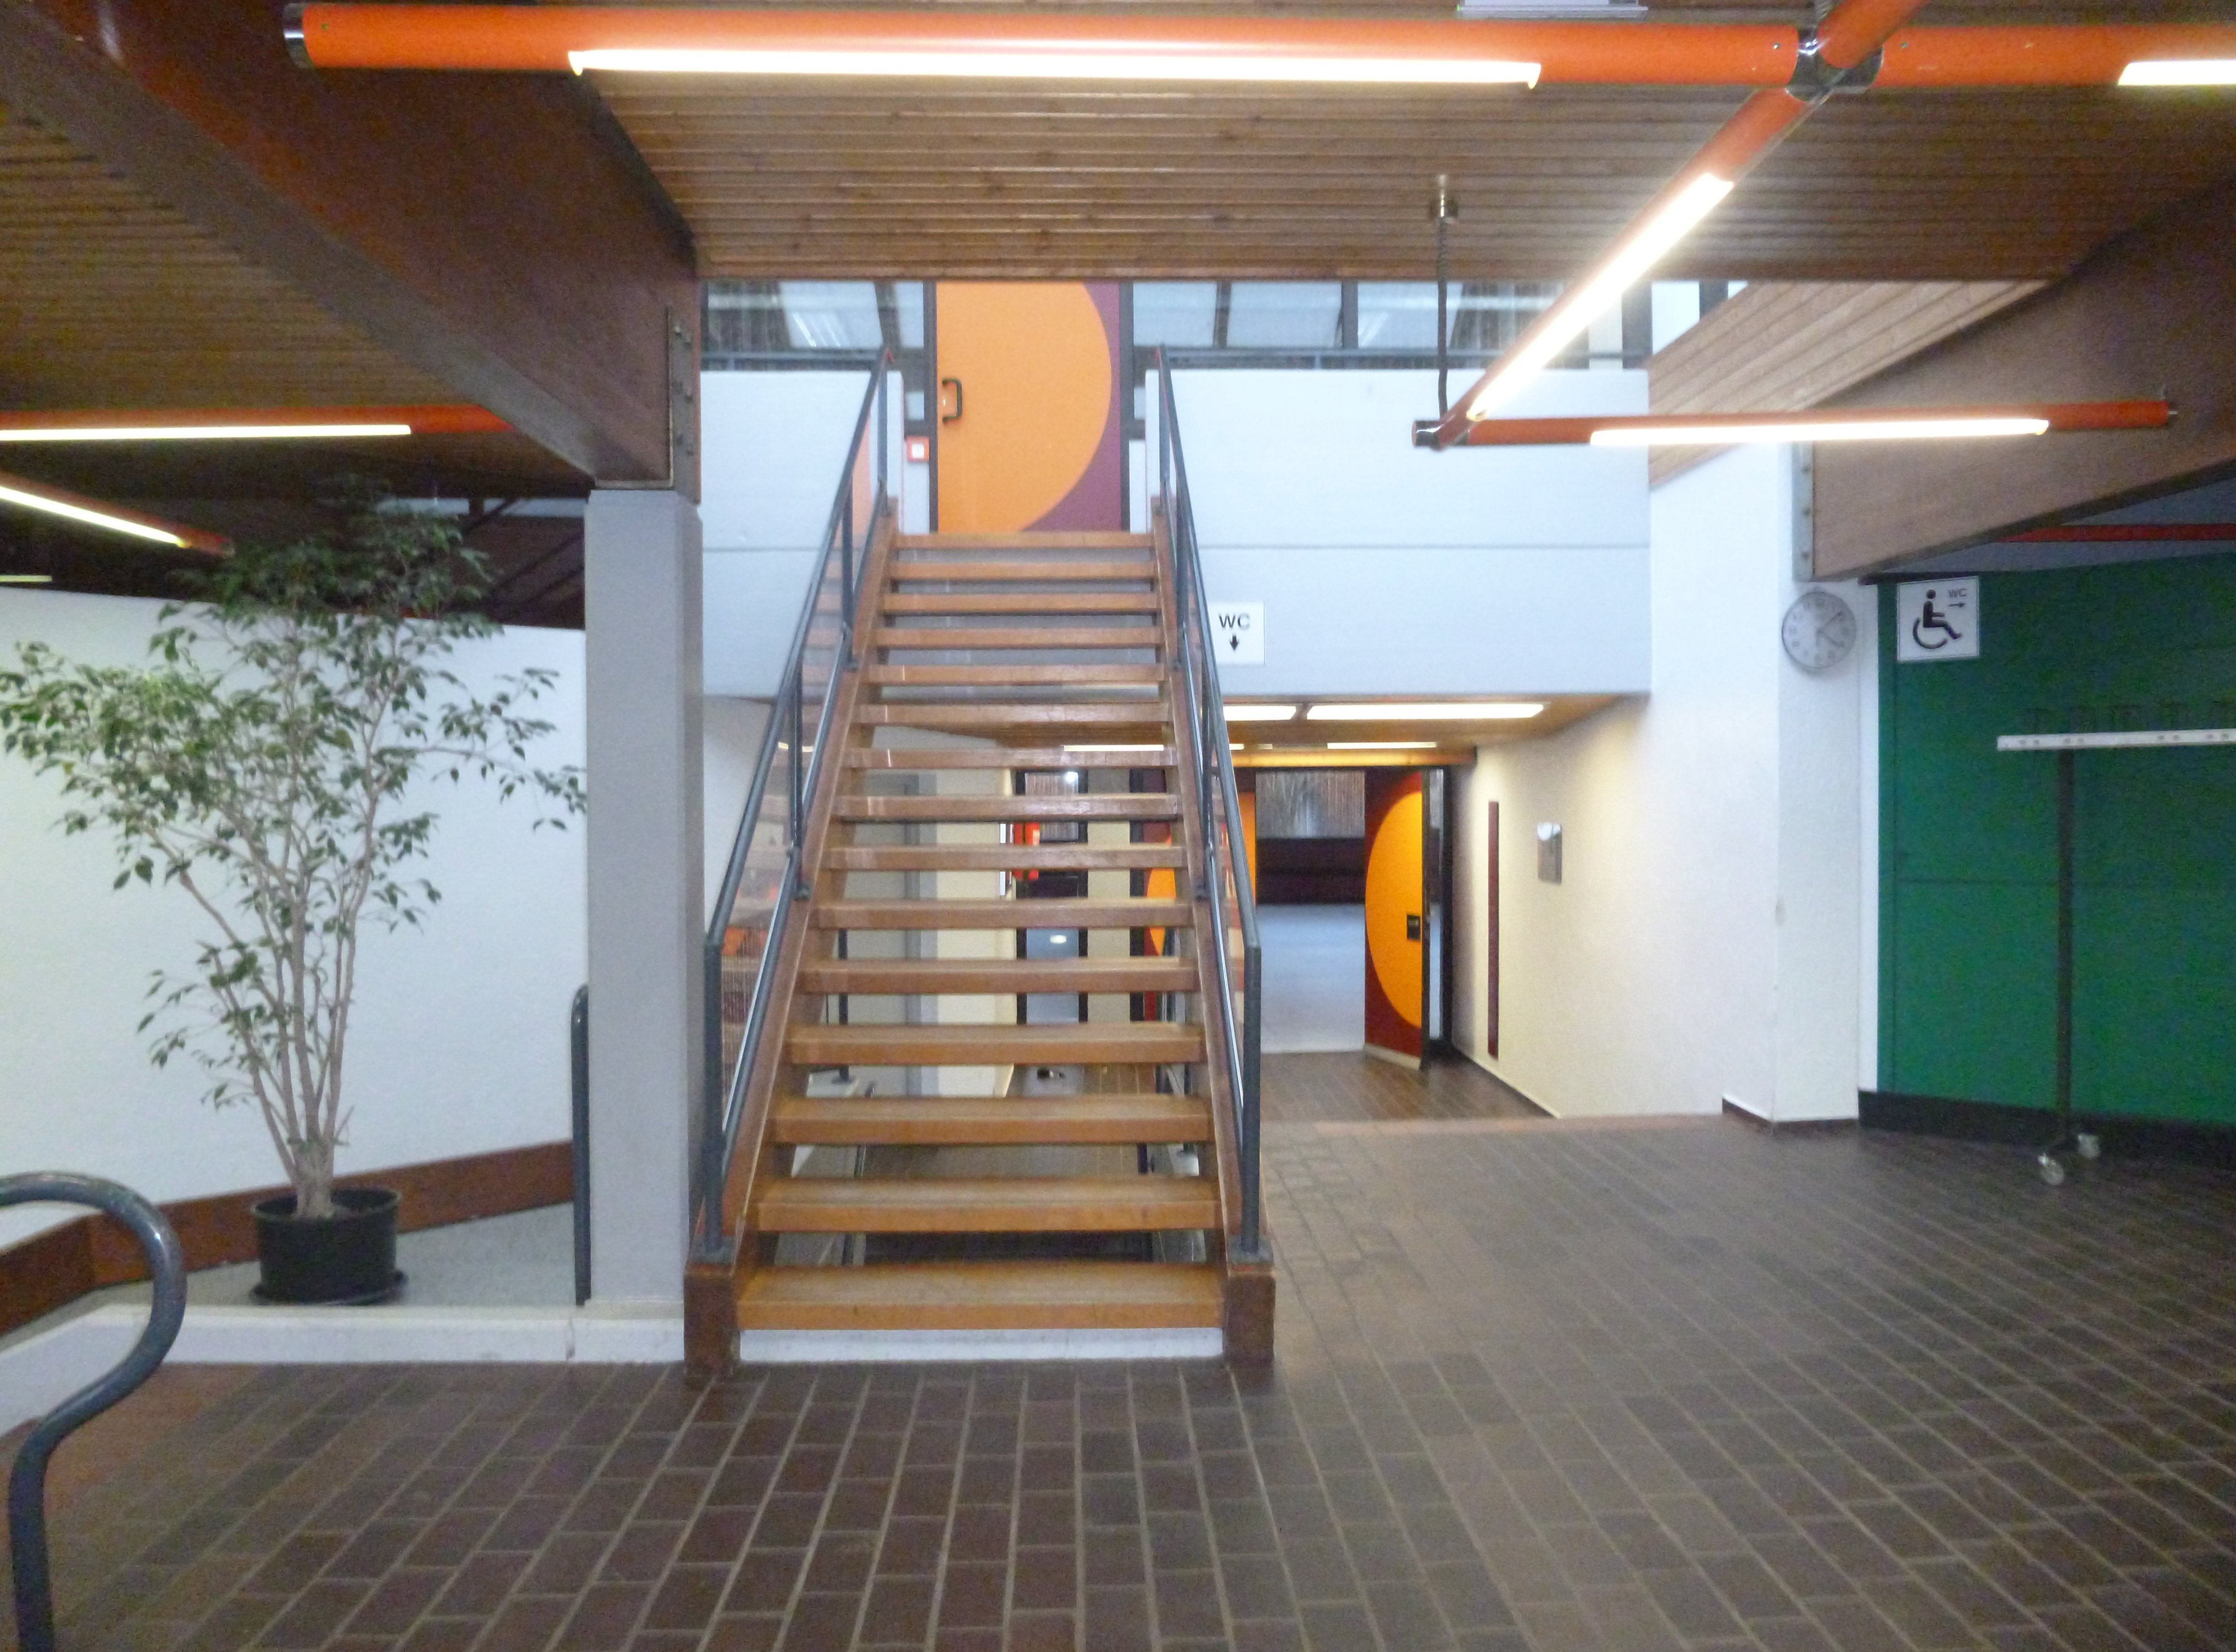  Foyer mit Aufgang zur Gallerie 